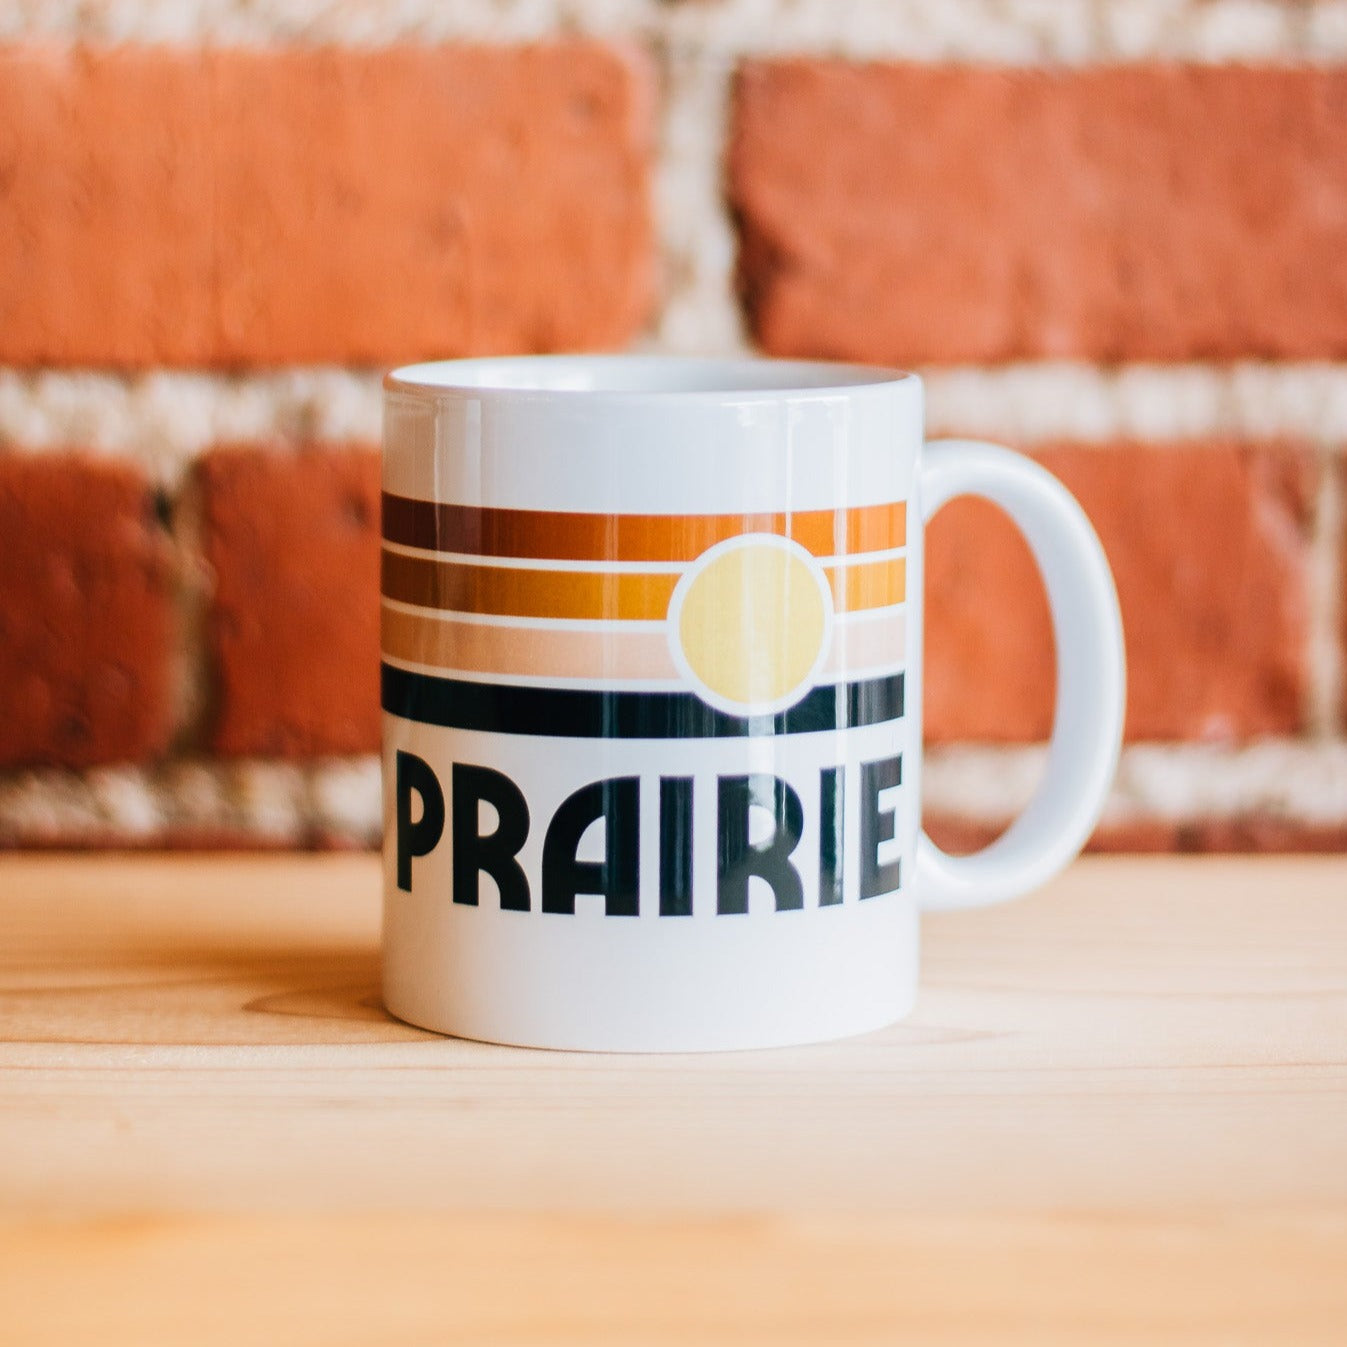 Konza Prairie Mug